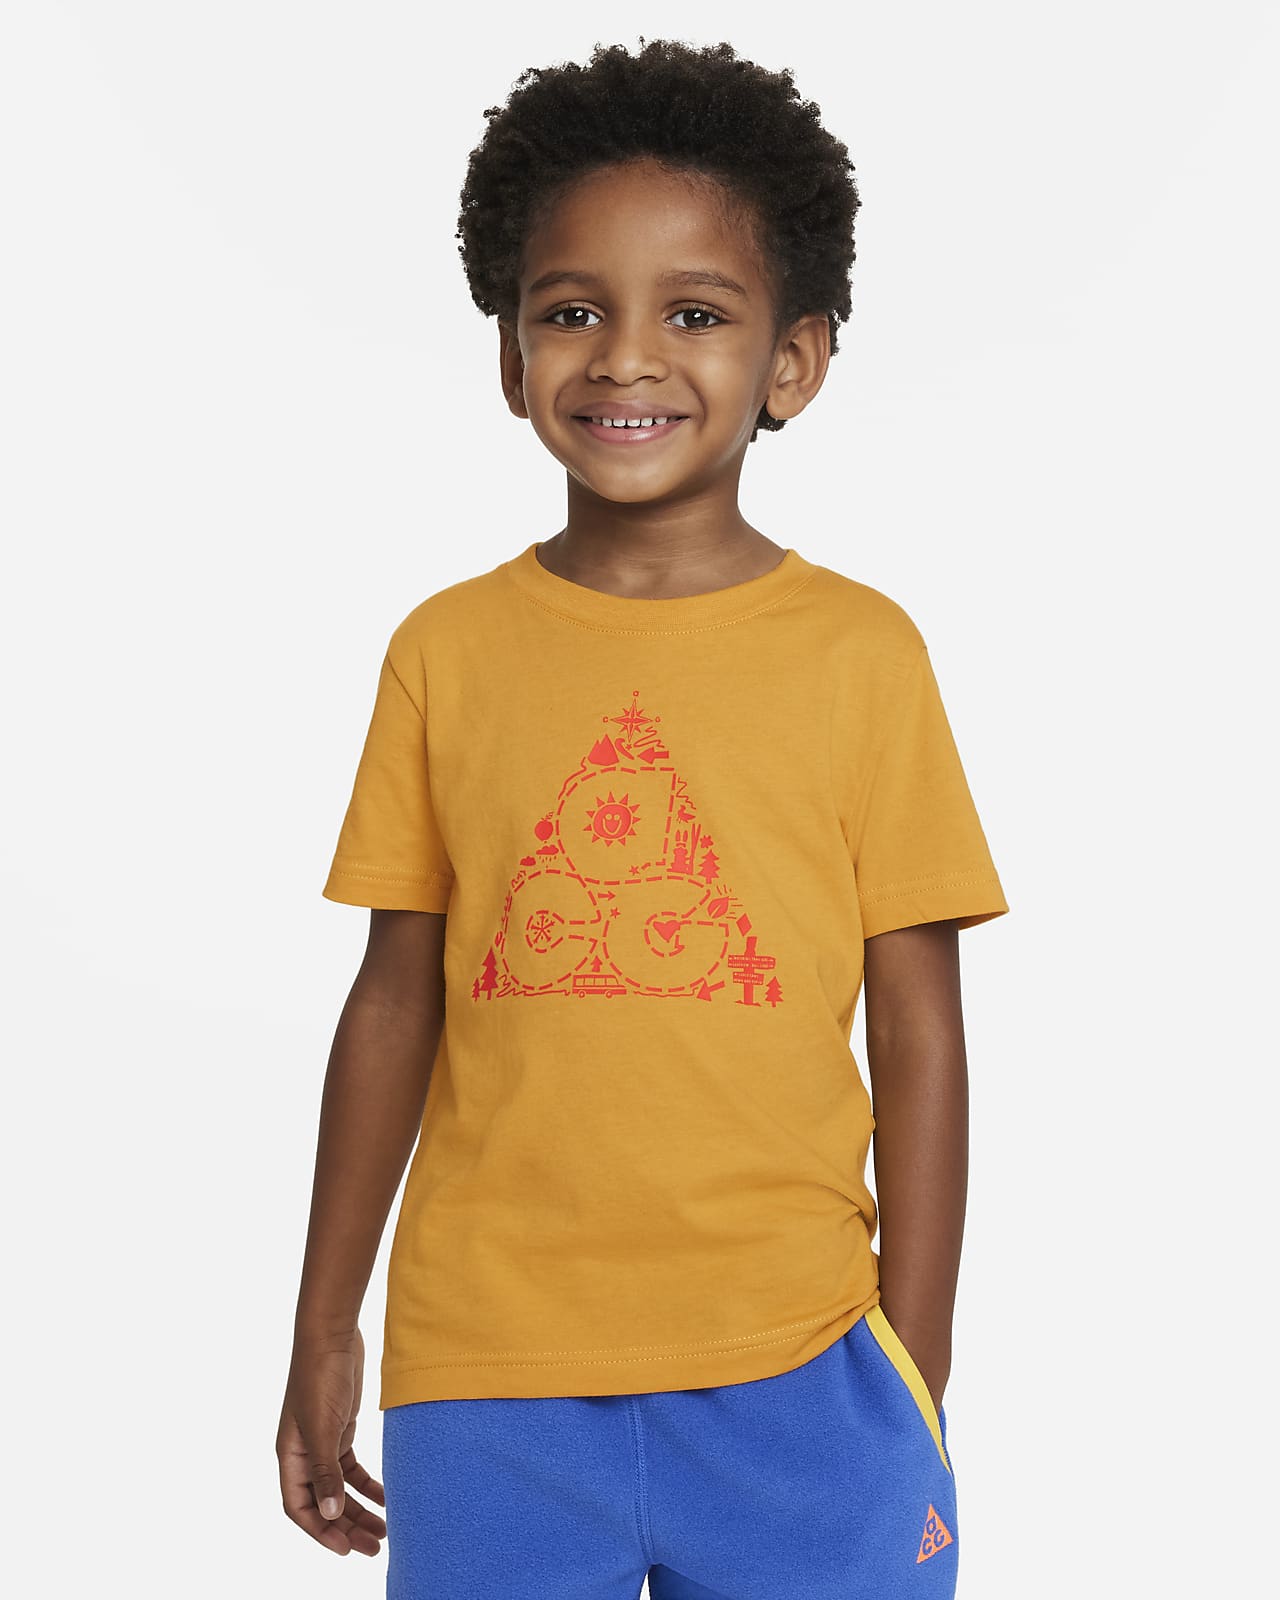 T-shirt ACG Nike para criança